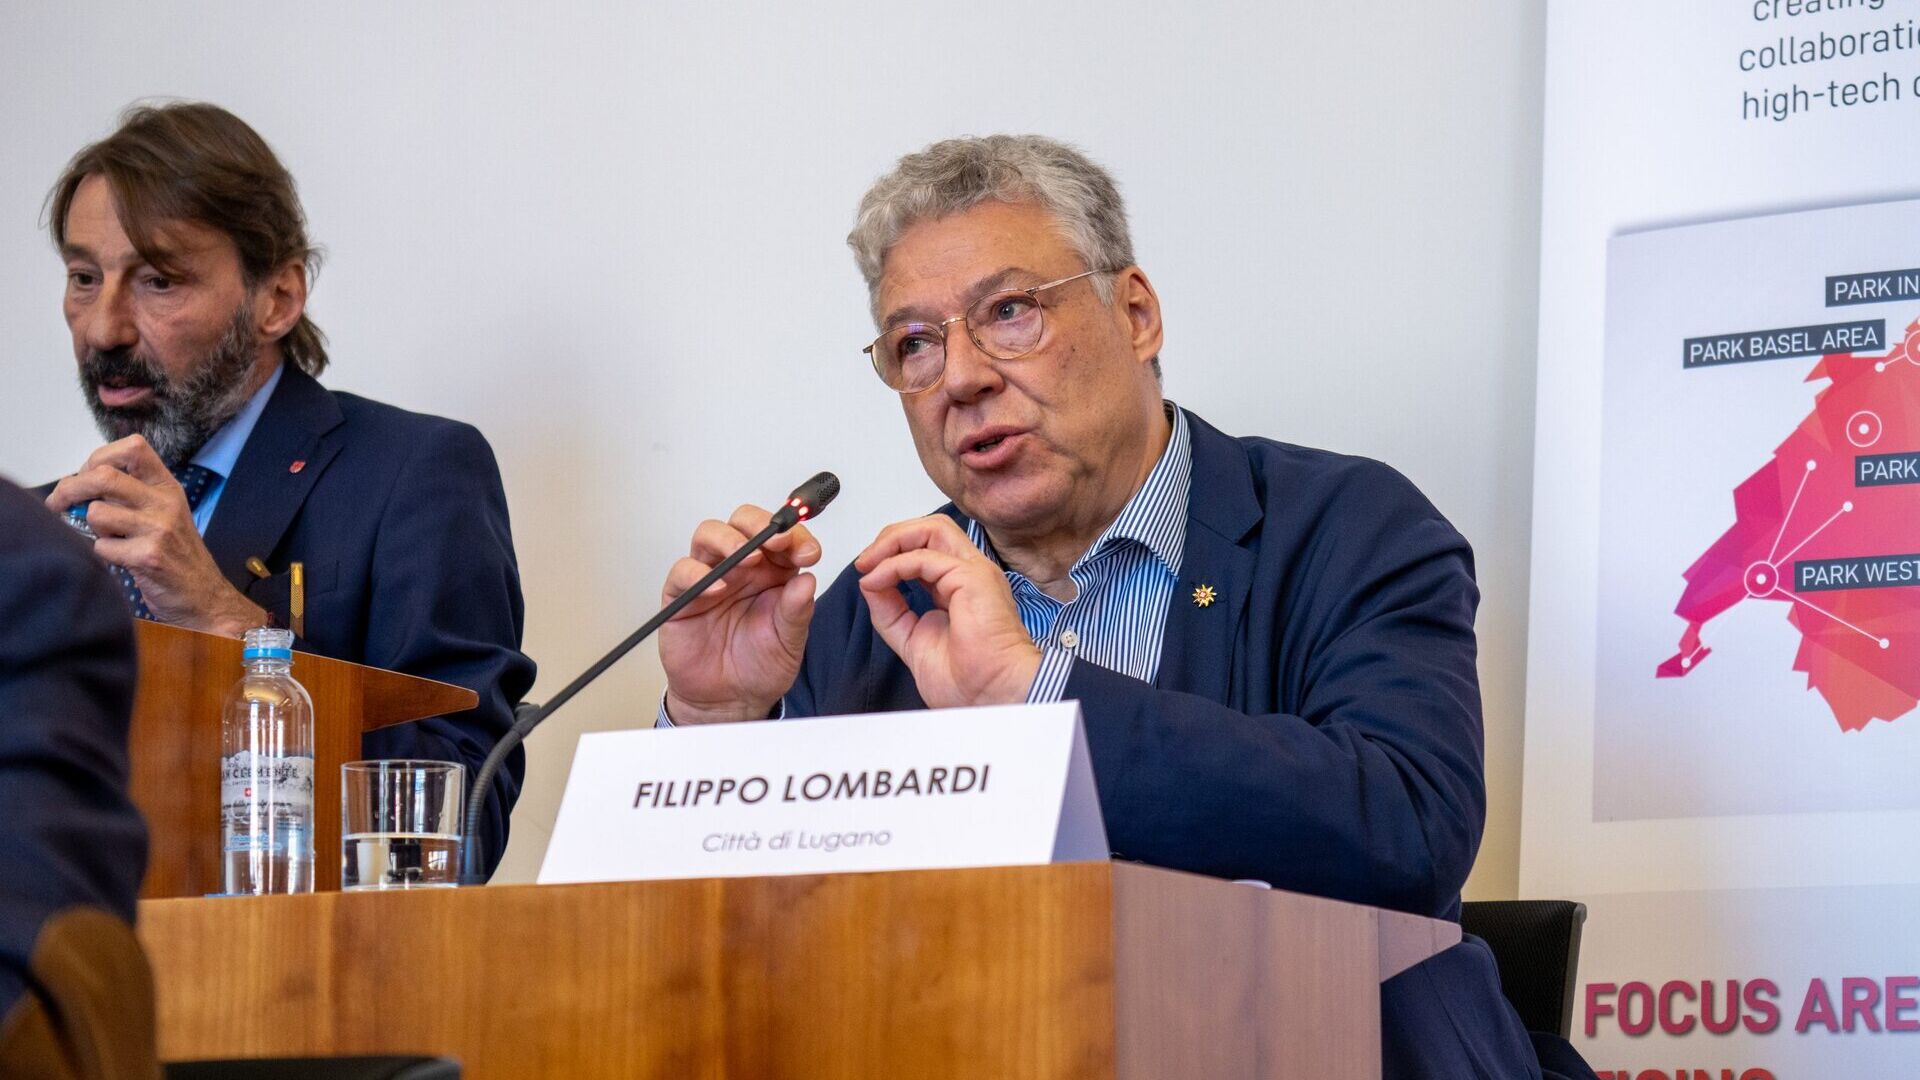 LTCC: Filippo Lombardi este consilier municipal și șef al Departamentului de dezvoltare teritorială al orașului Lugano